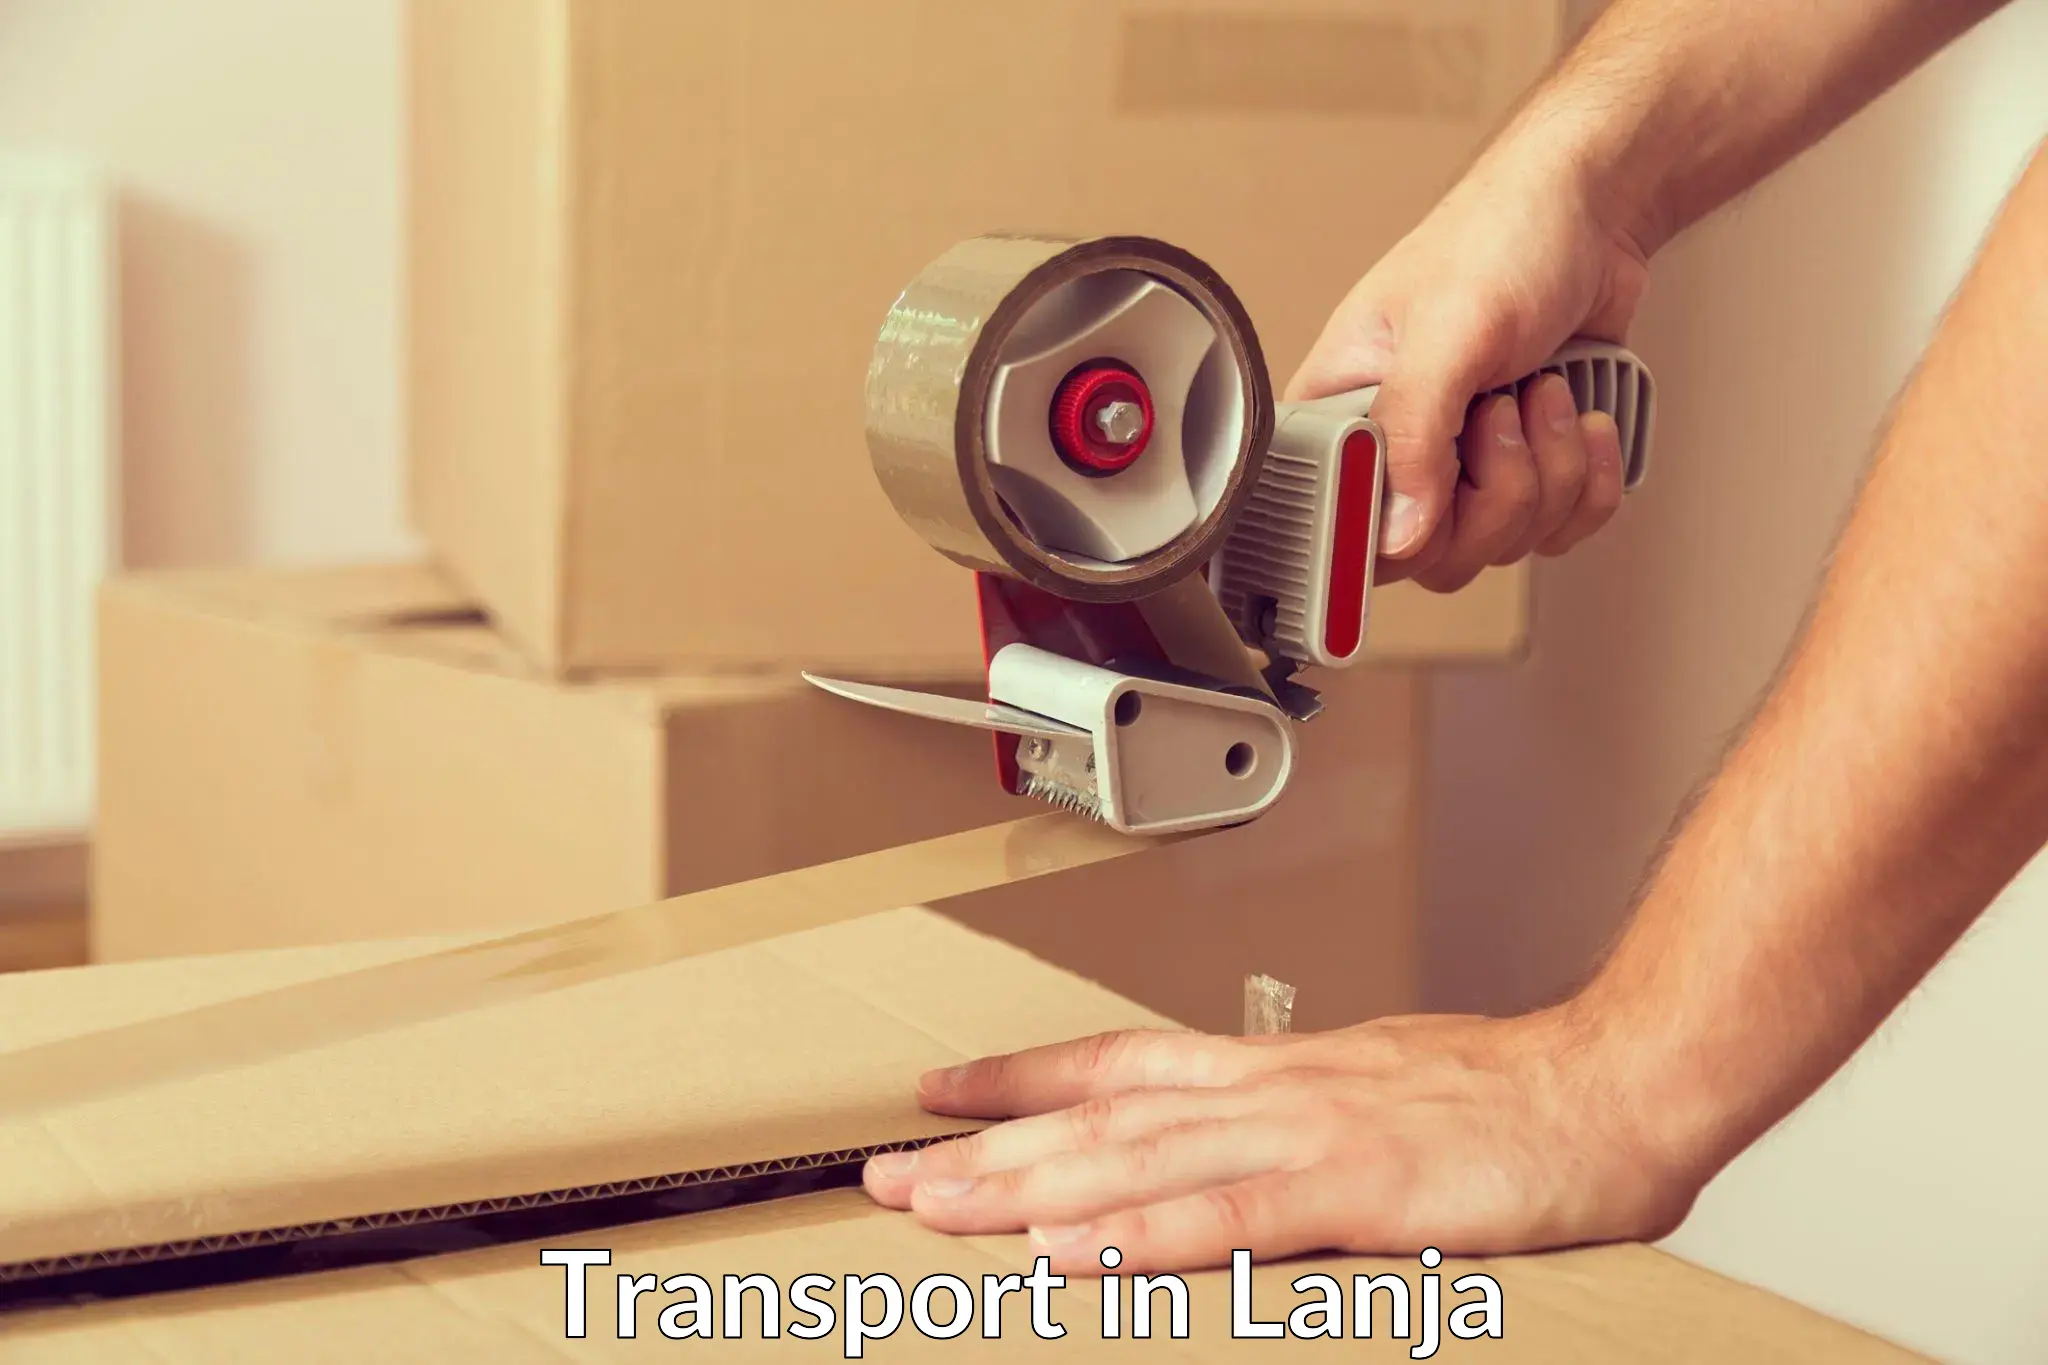 Online transport booking in Lanja